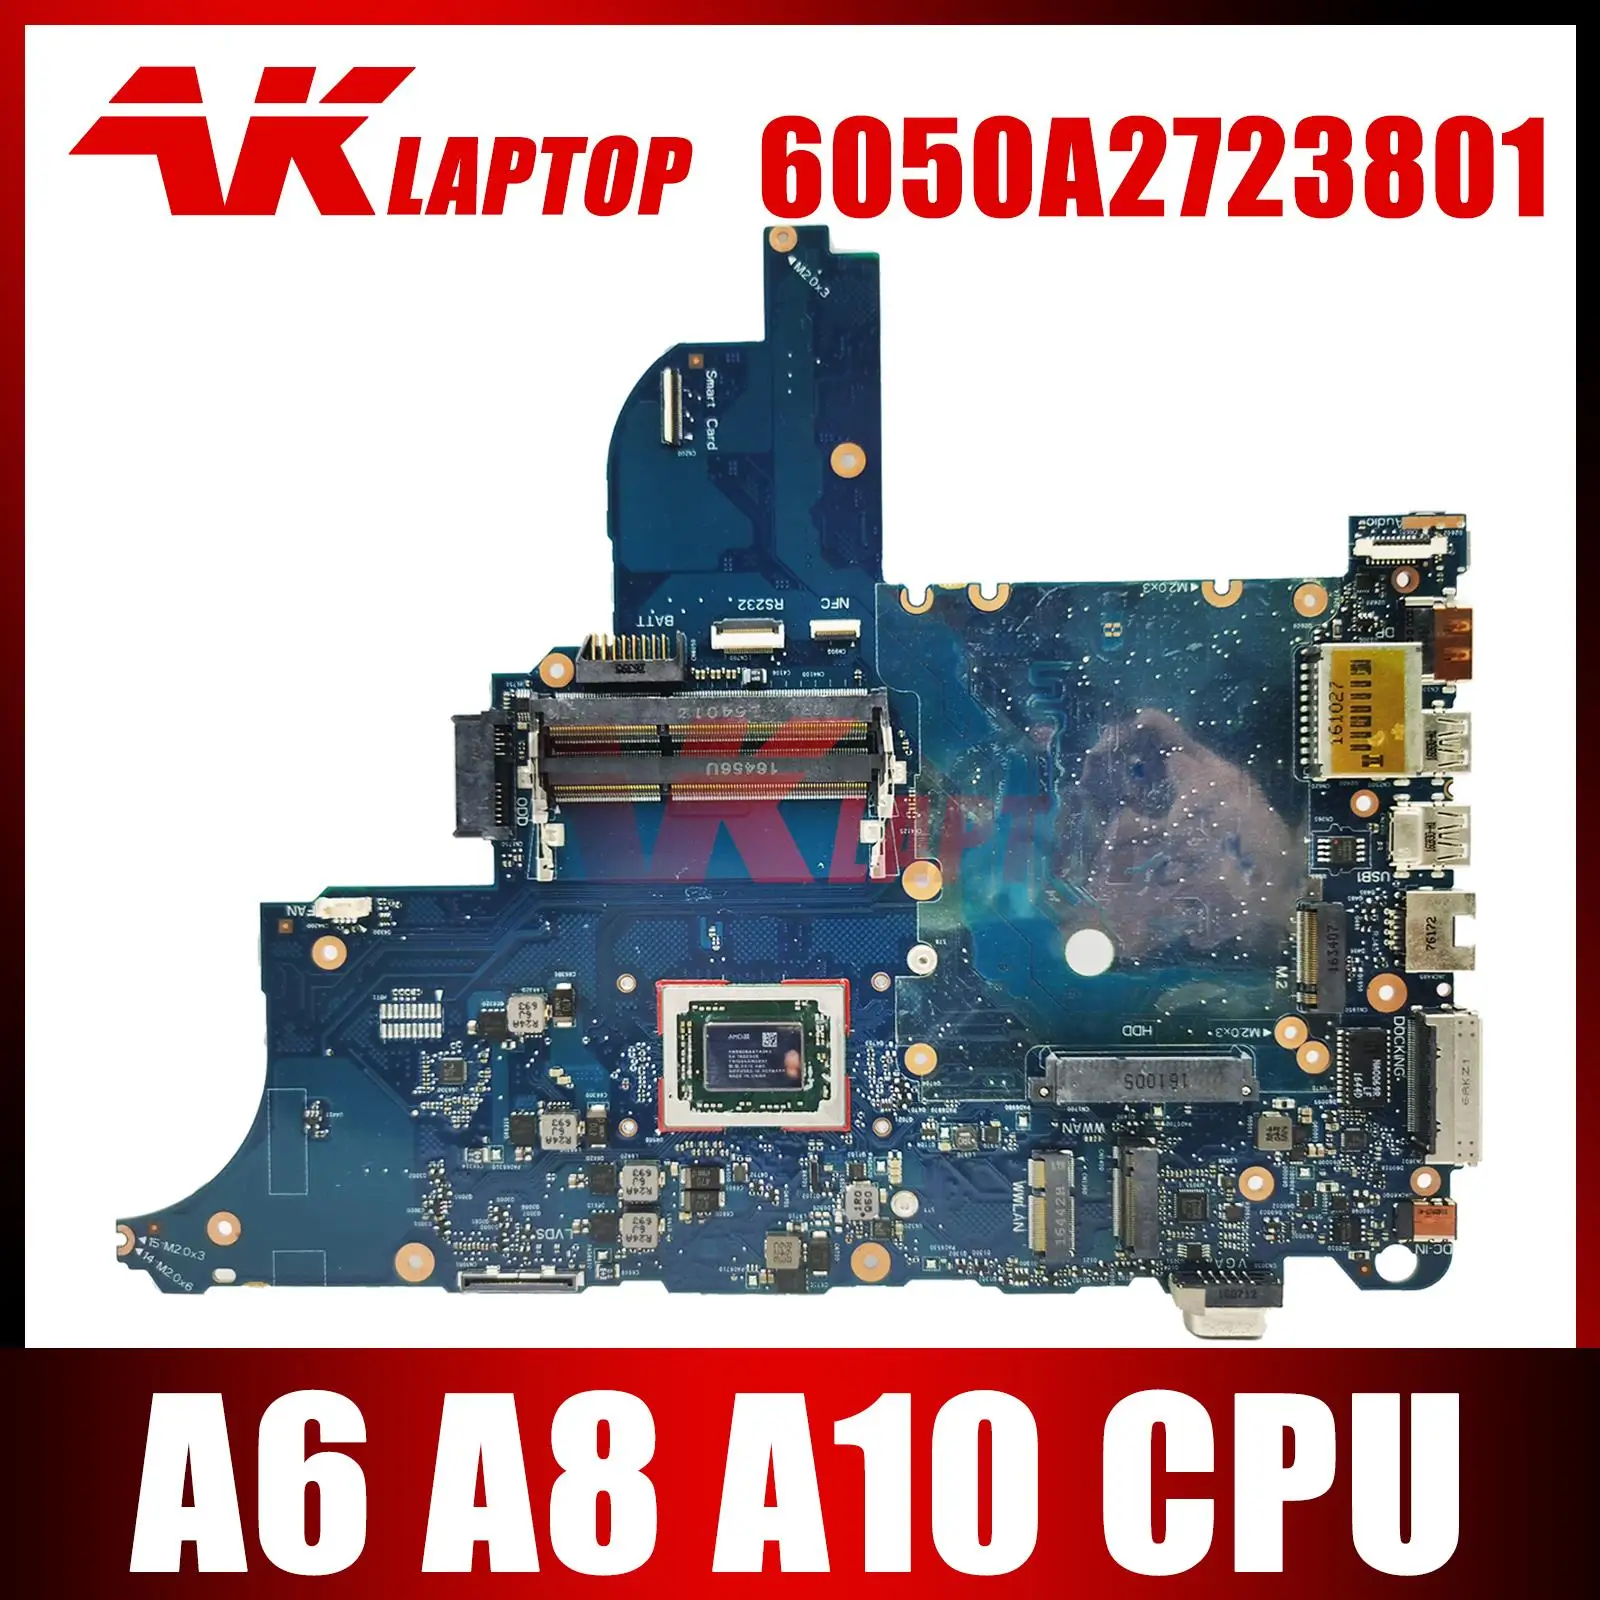 Para HP ProBook 645 G2 655 G2 laptop placa-Mãe placa-mãe Com A6 A8 A10 da AMD CPU UMA 6050A2723801 placa-Mãe